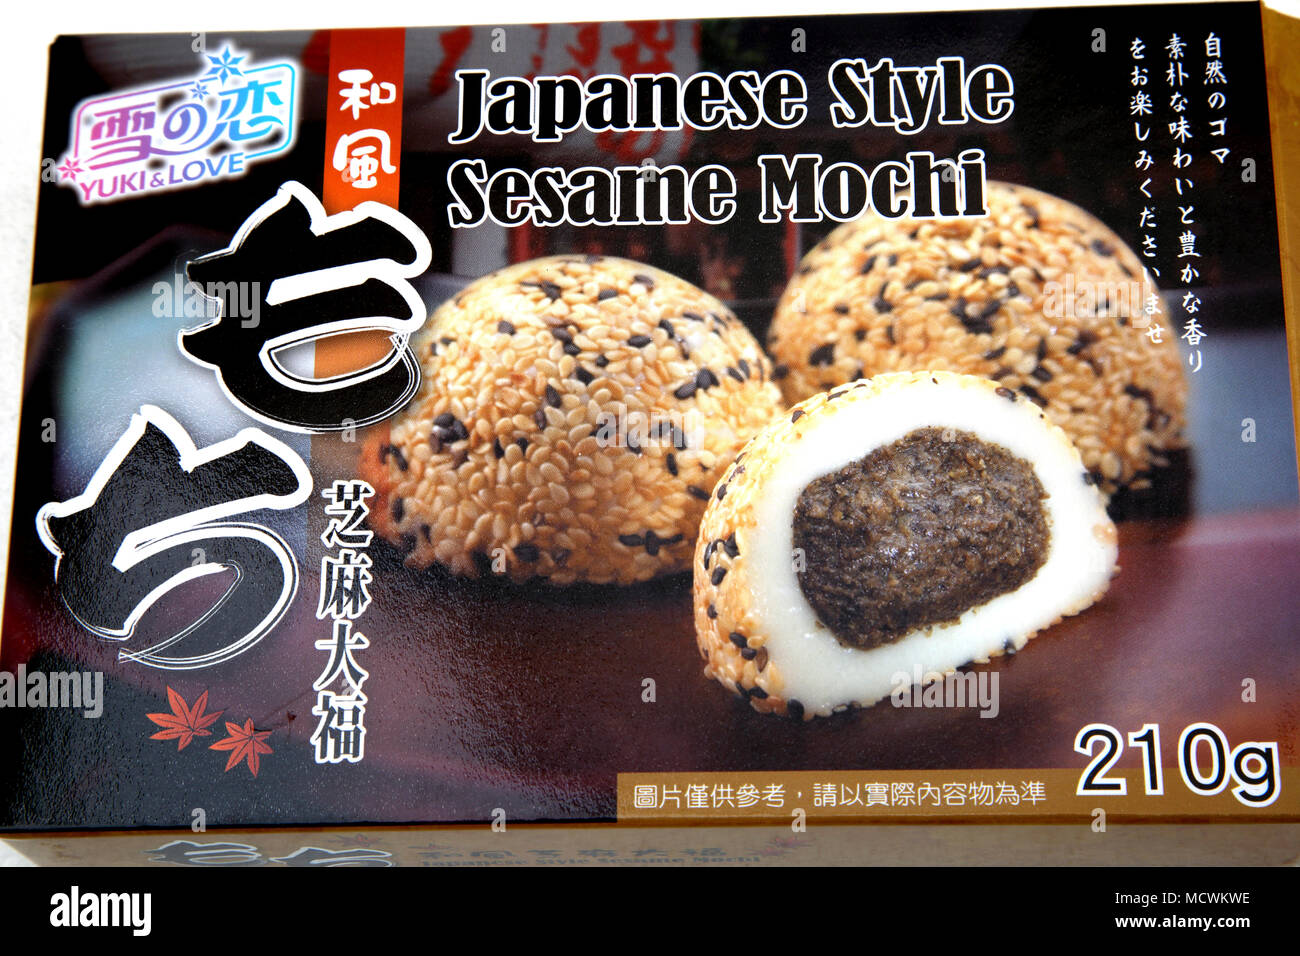 Box of Japanese Style Sesame Mochi Stock Photo